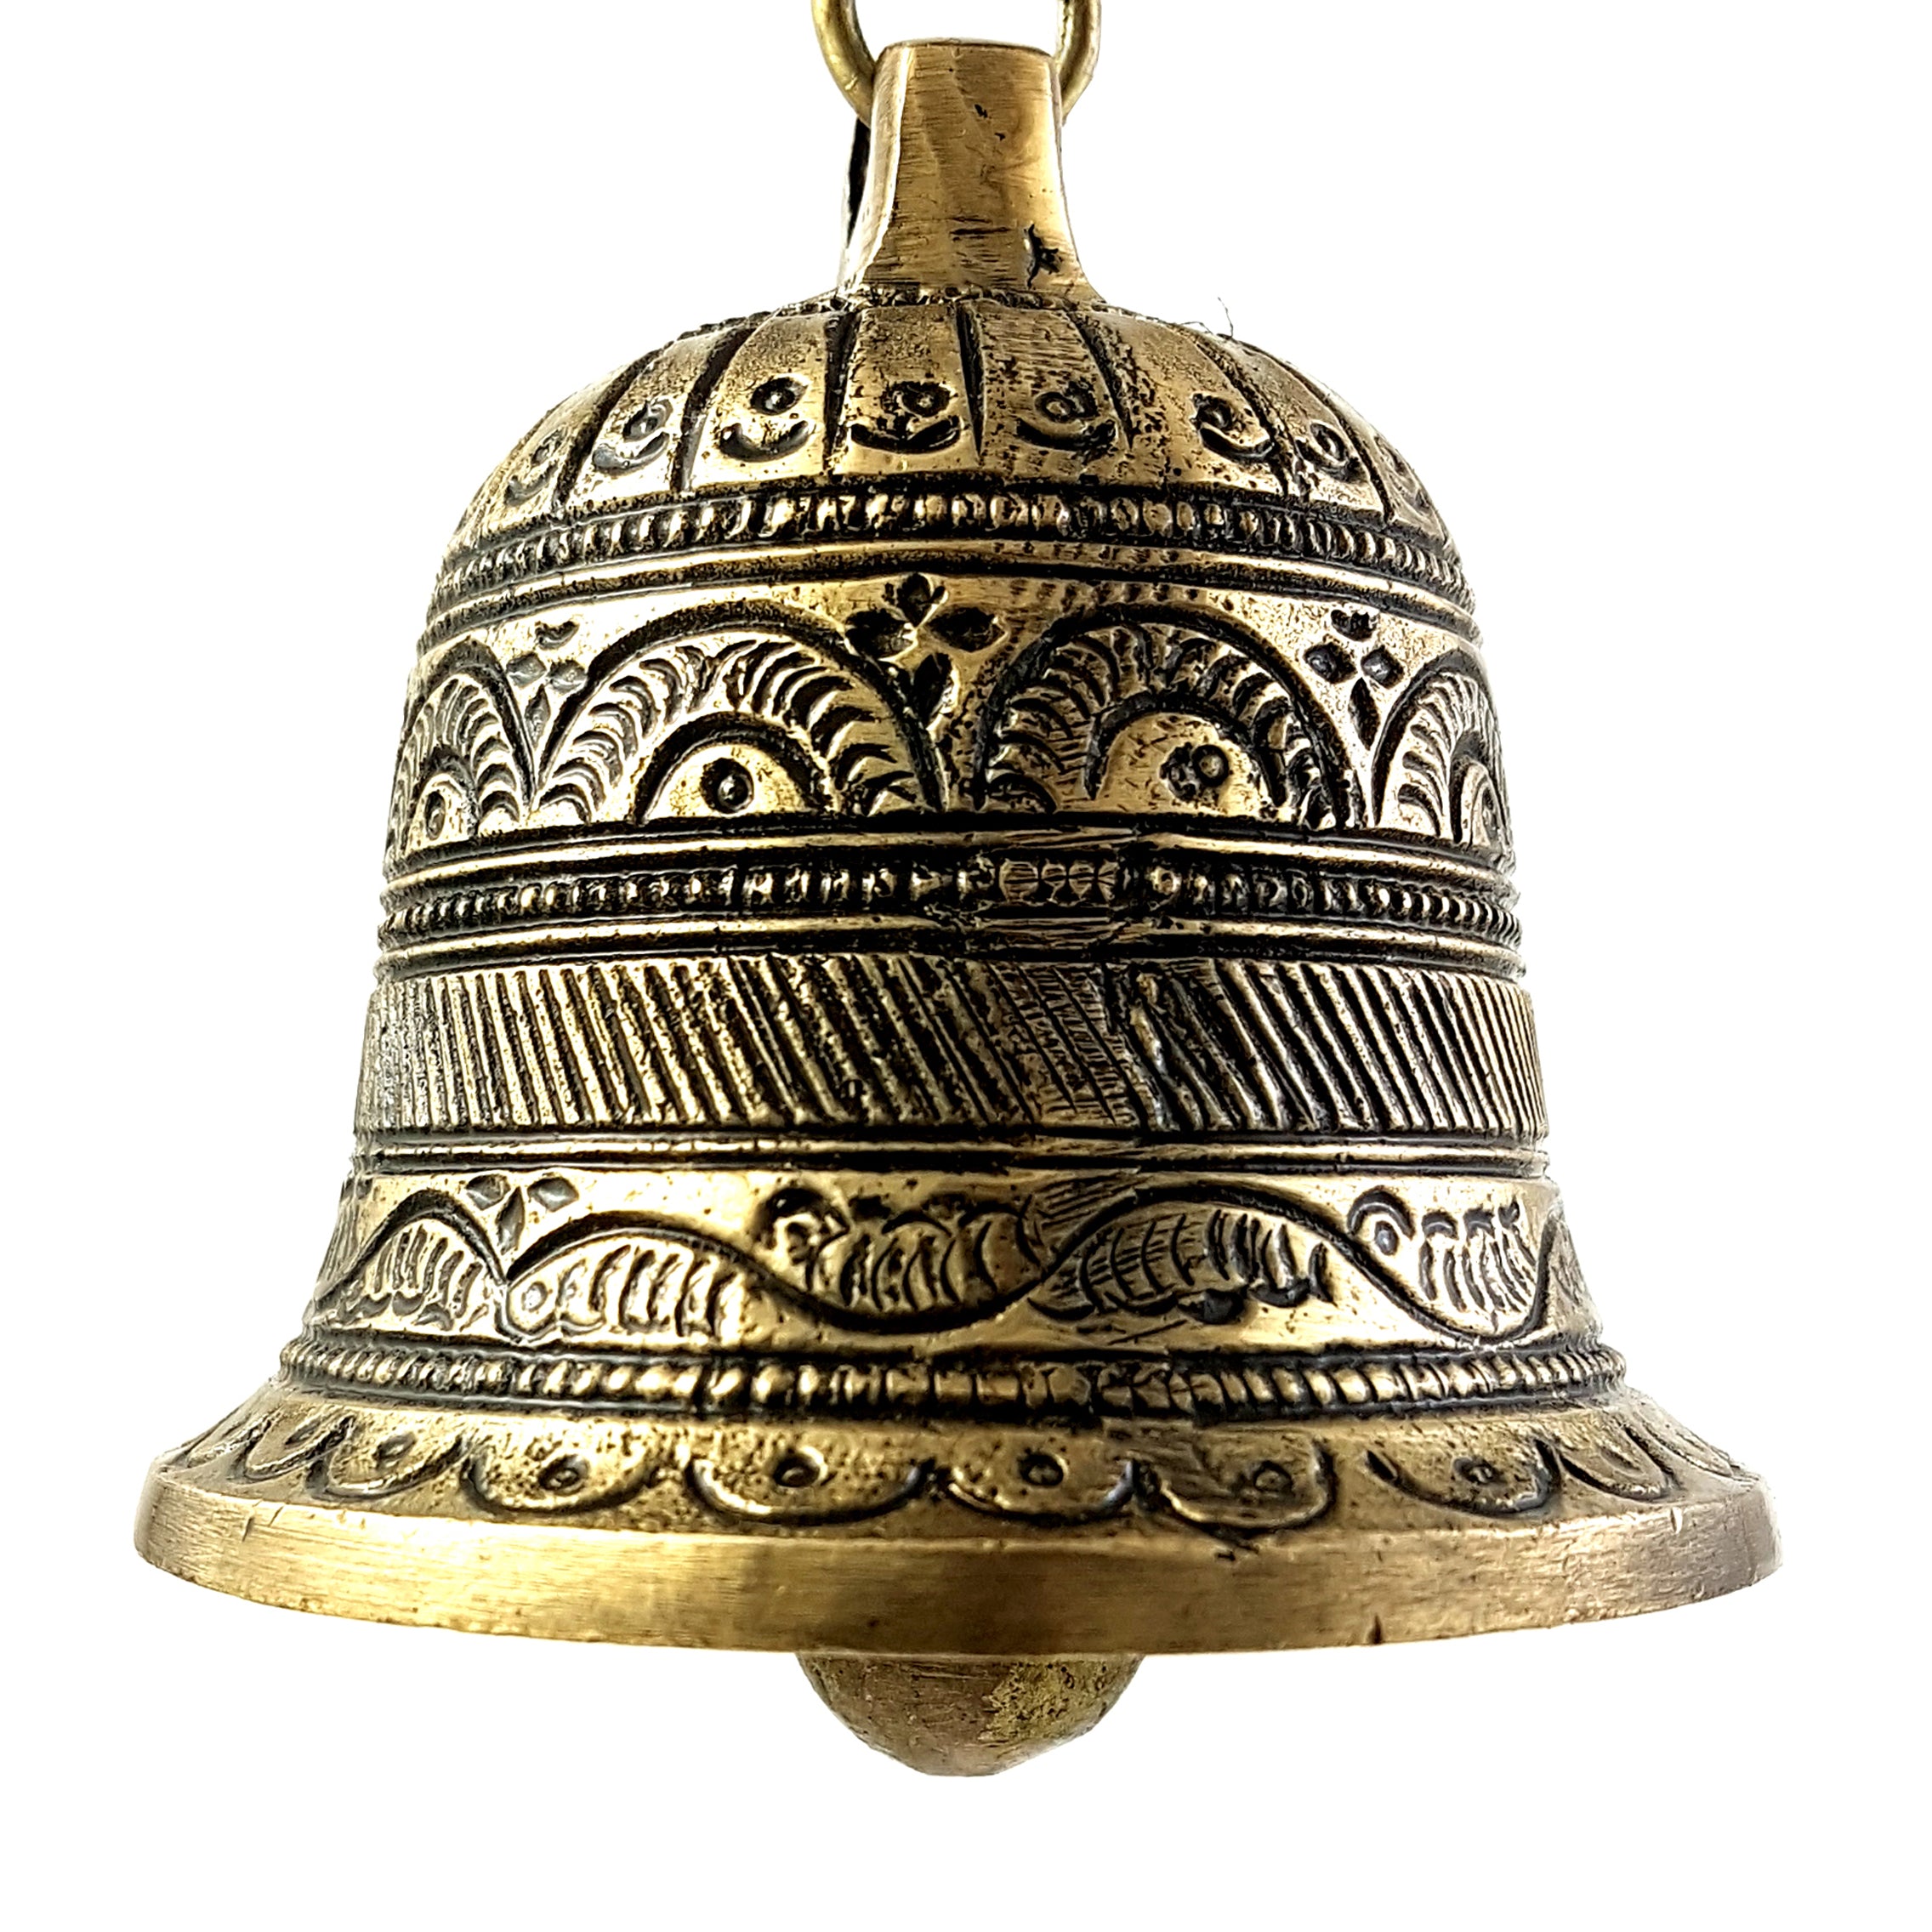 Brass Ethnic Carved Temple Hanging Designer Bell, Hanging Bells for Decoration